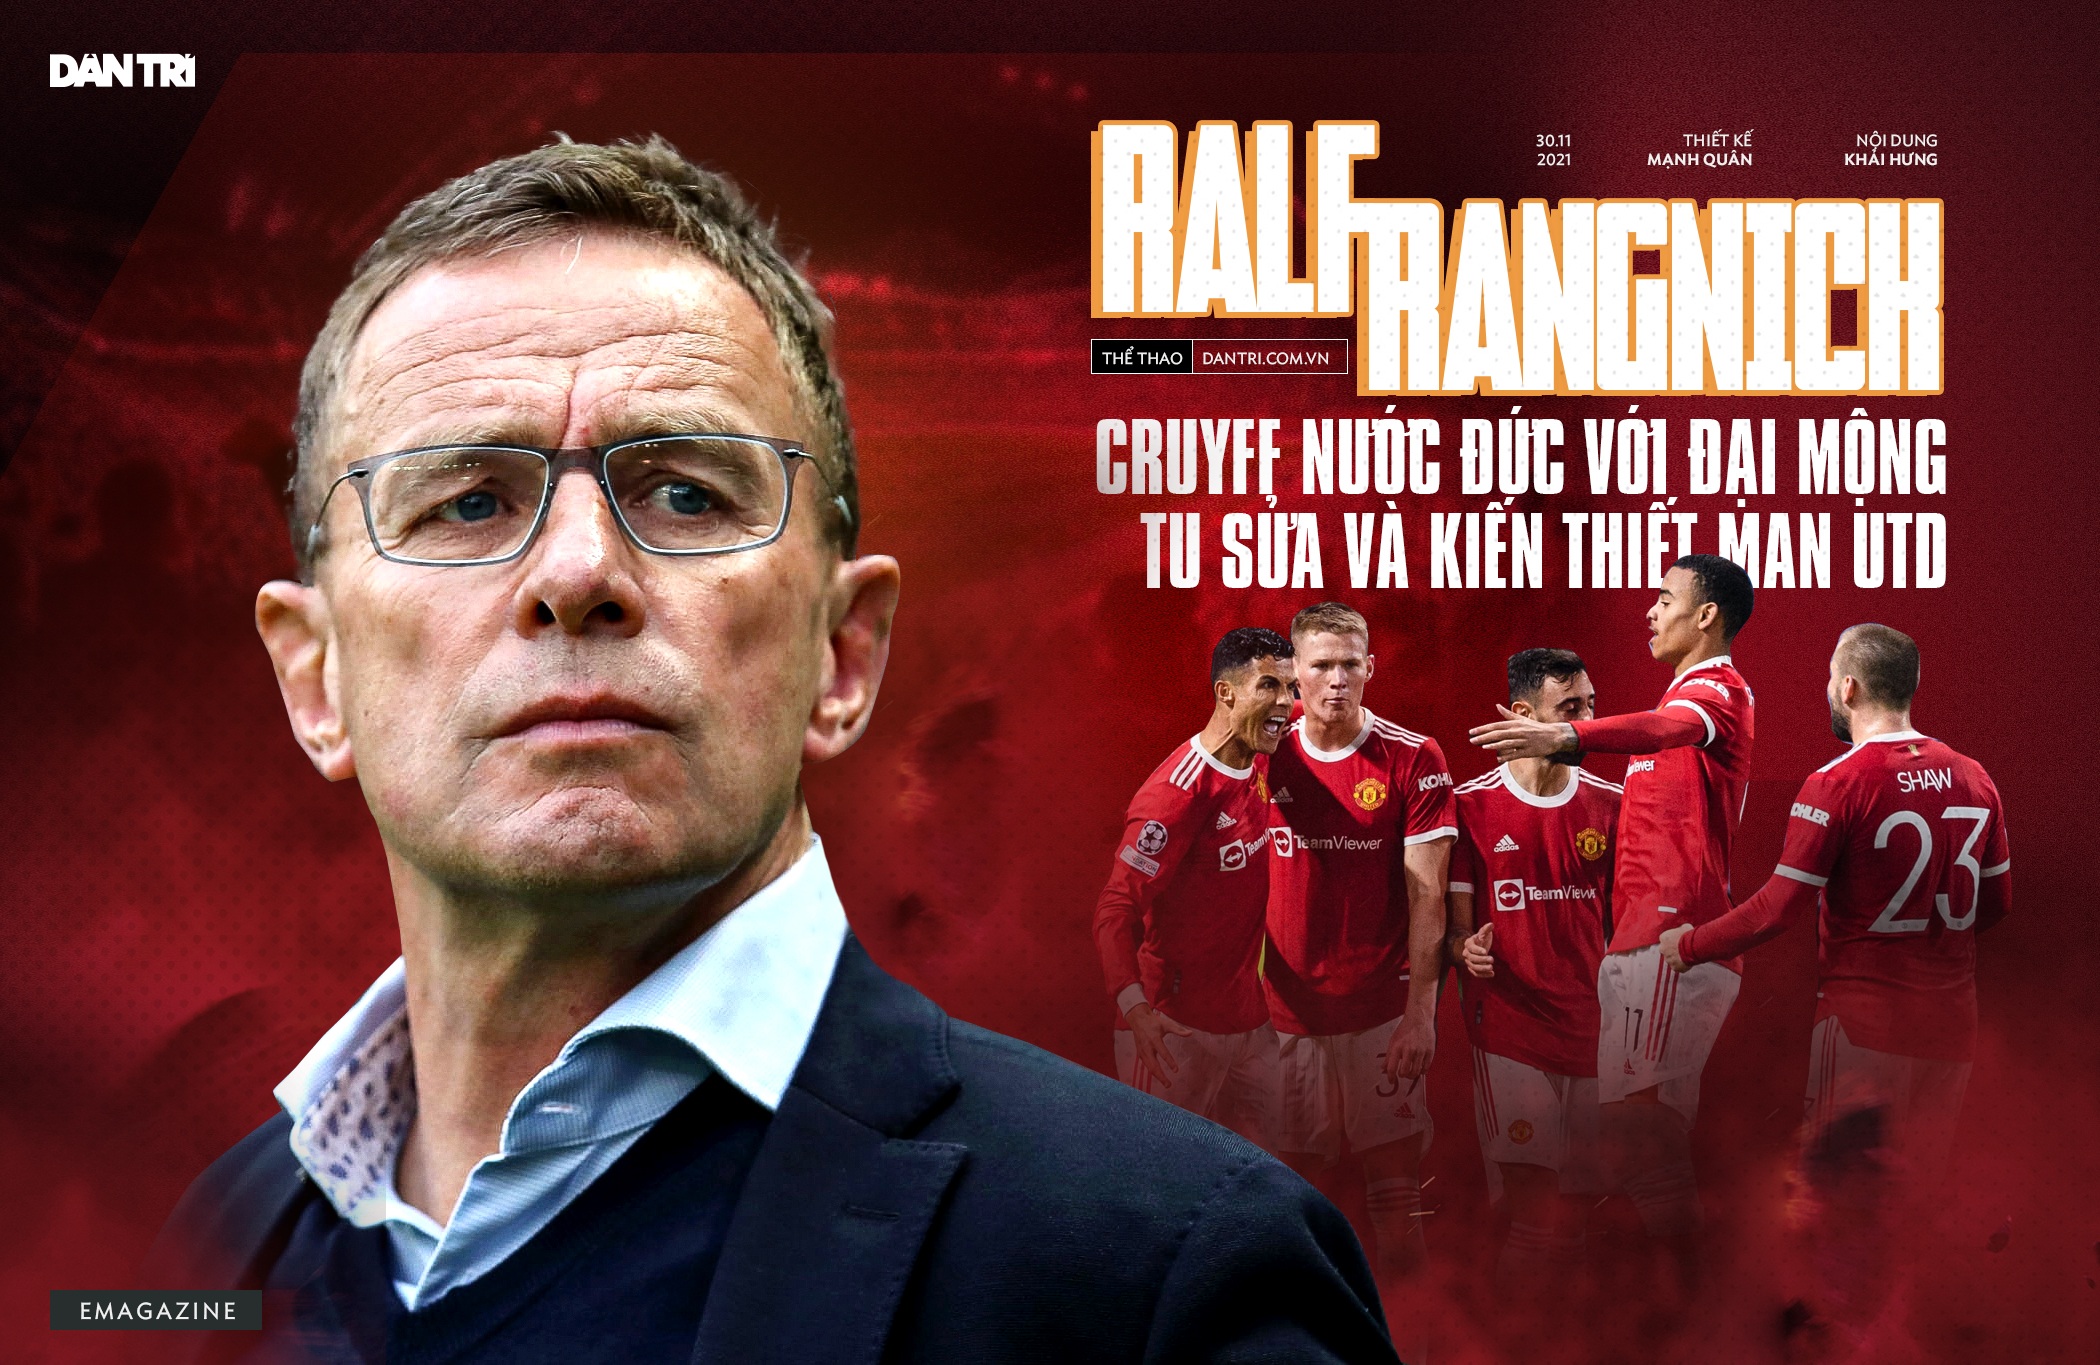 Ralf Rangnick: Cruyff nước Đức với đại mộng tu sửa và kiến thiết Man Utd